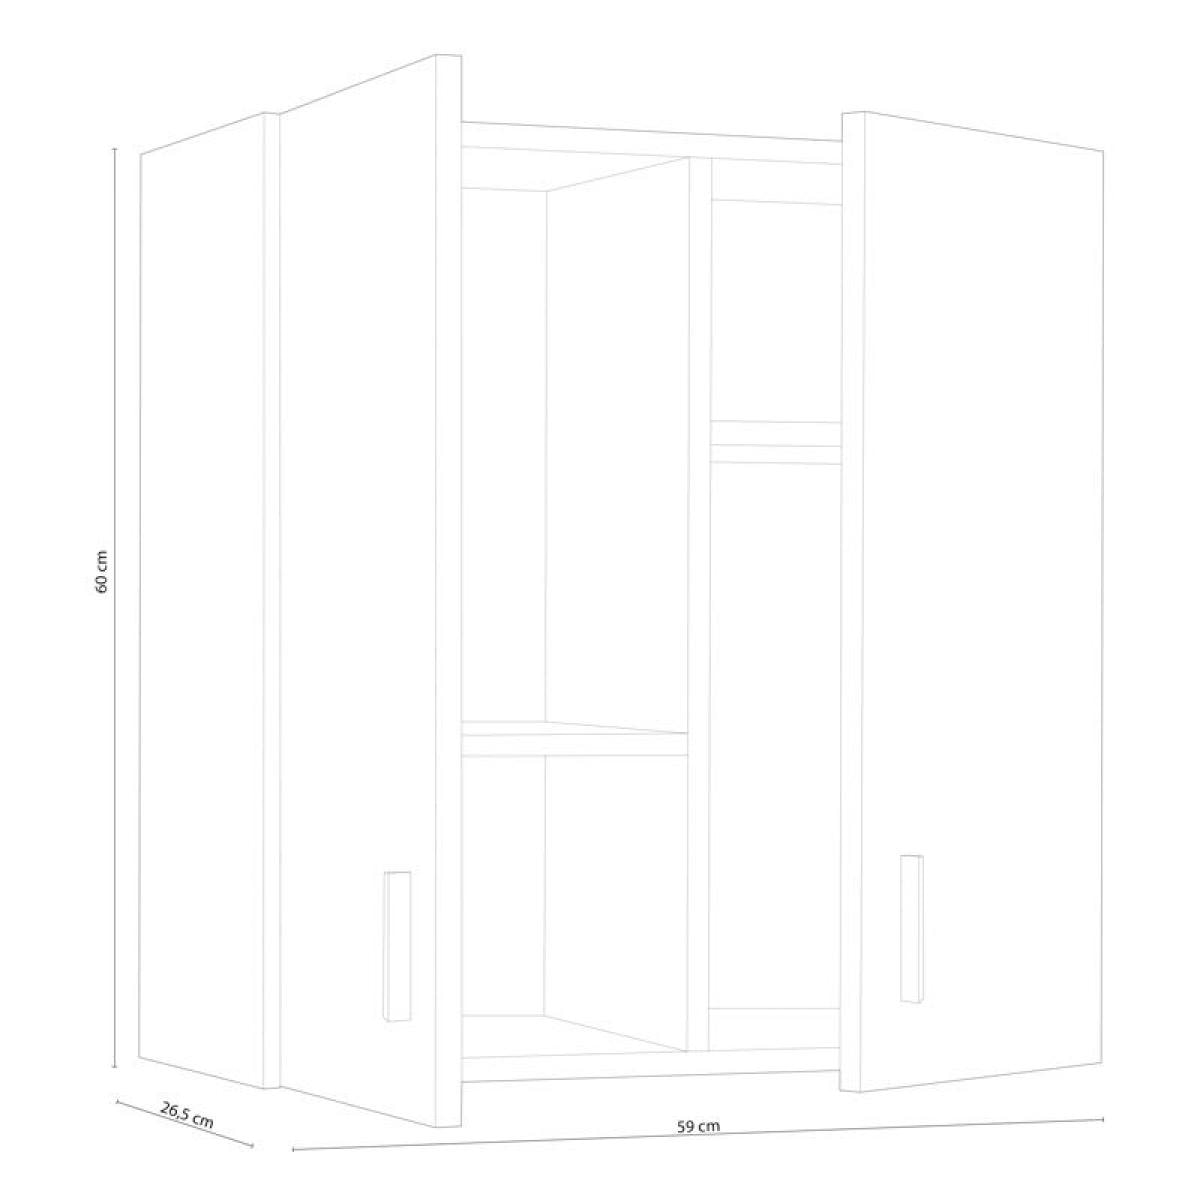 Armario Ordenación Hogar Multiuso con Ruedas 72x60x30 Blanco, dos puertas,  dos niveles interiores, fácil montaje, practico, resistente, decorativo